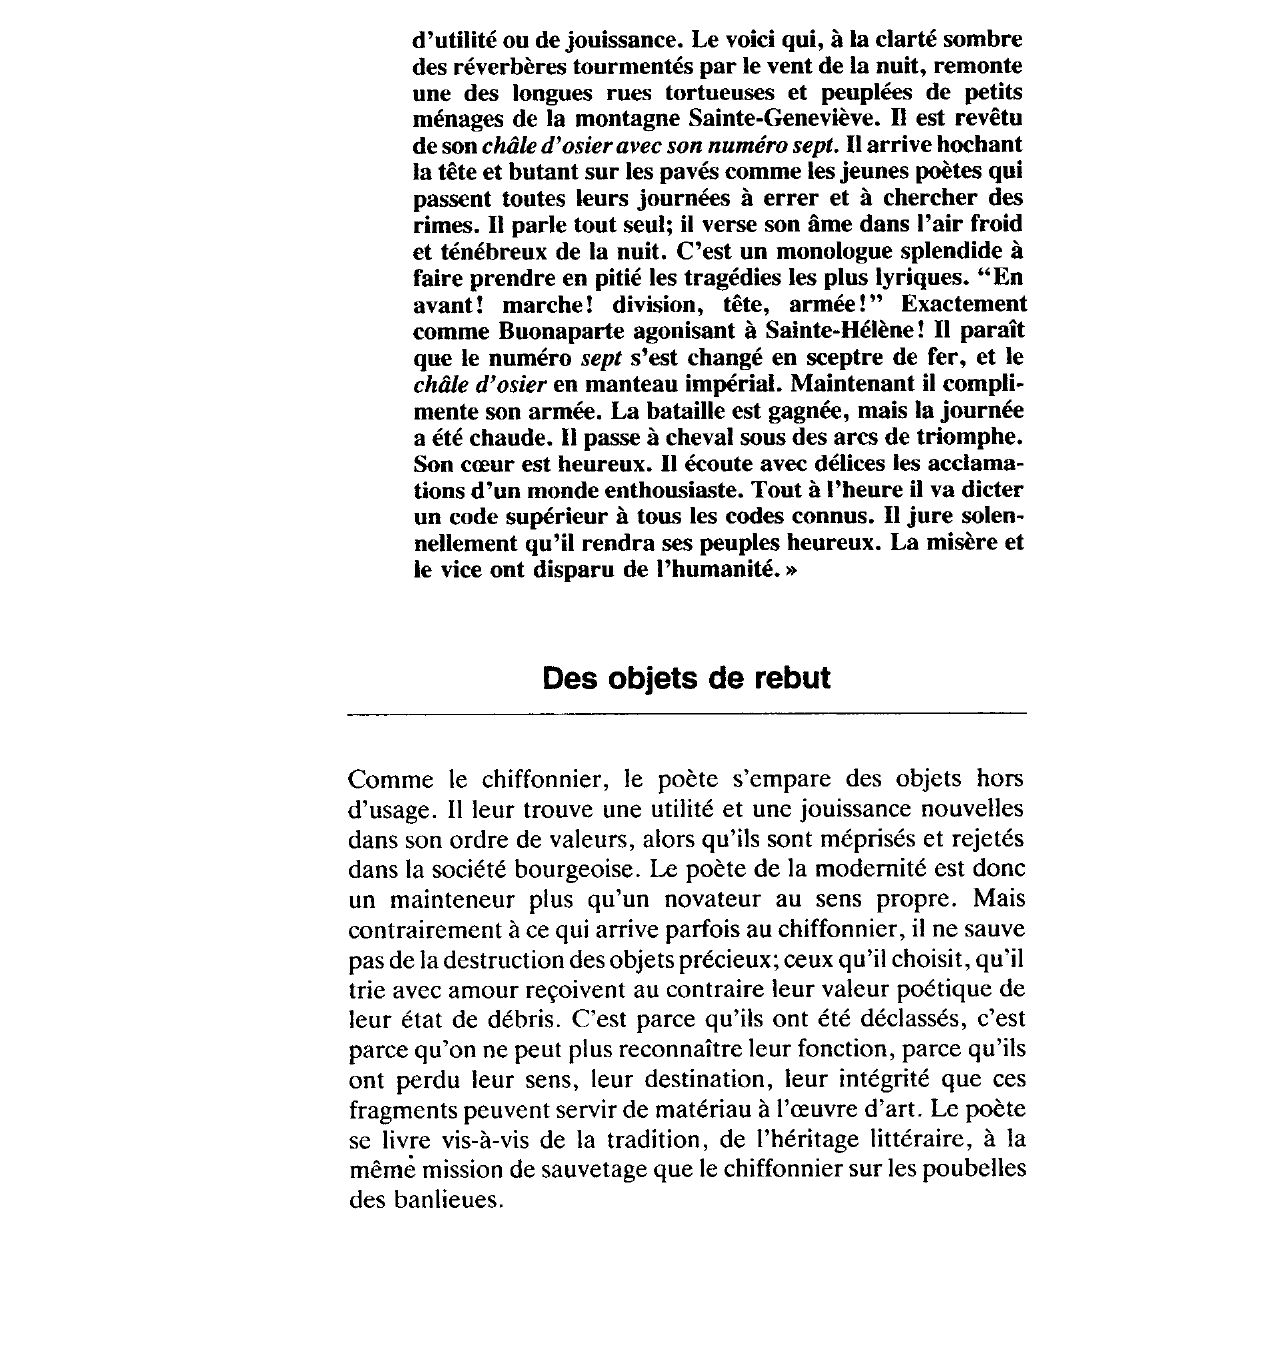 Prévisualisation du document Le poète en chiffonnier de la modernité (Baudelaire)